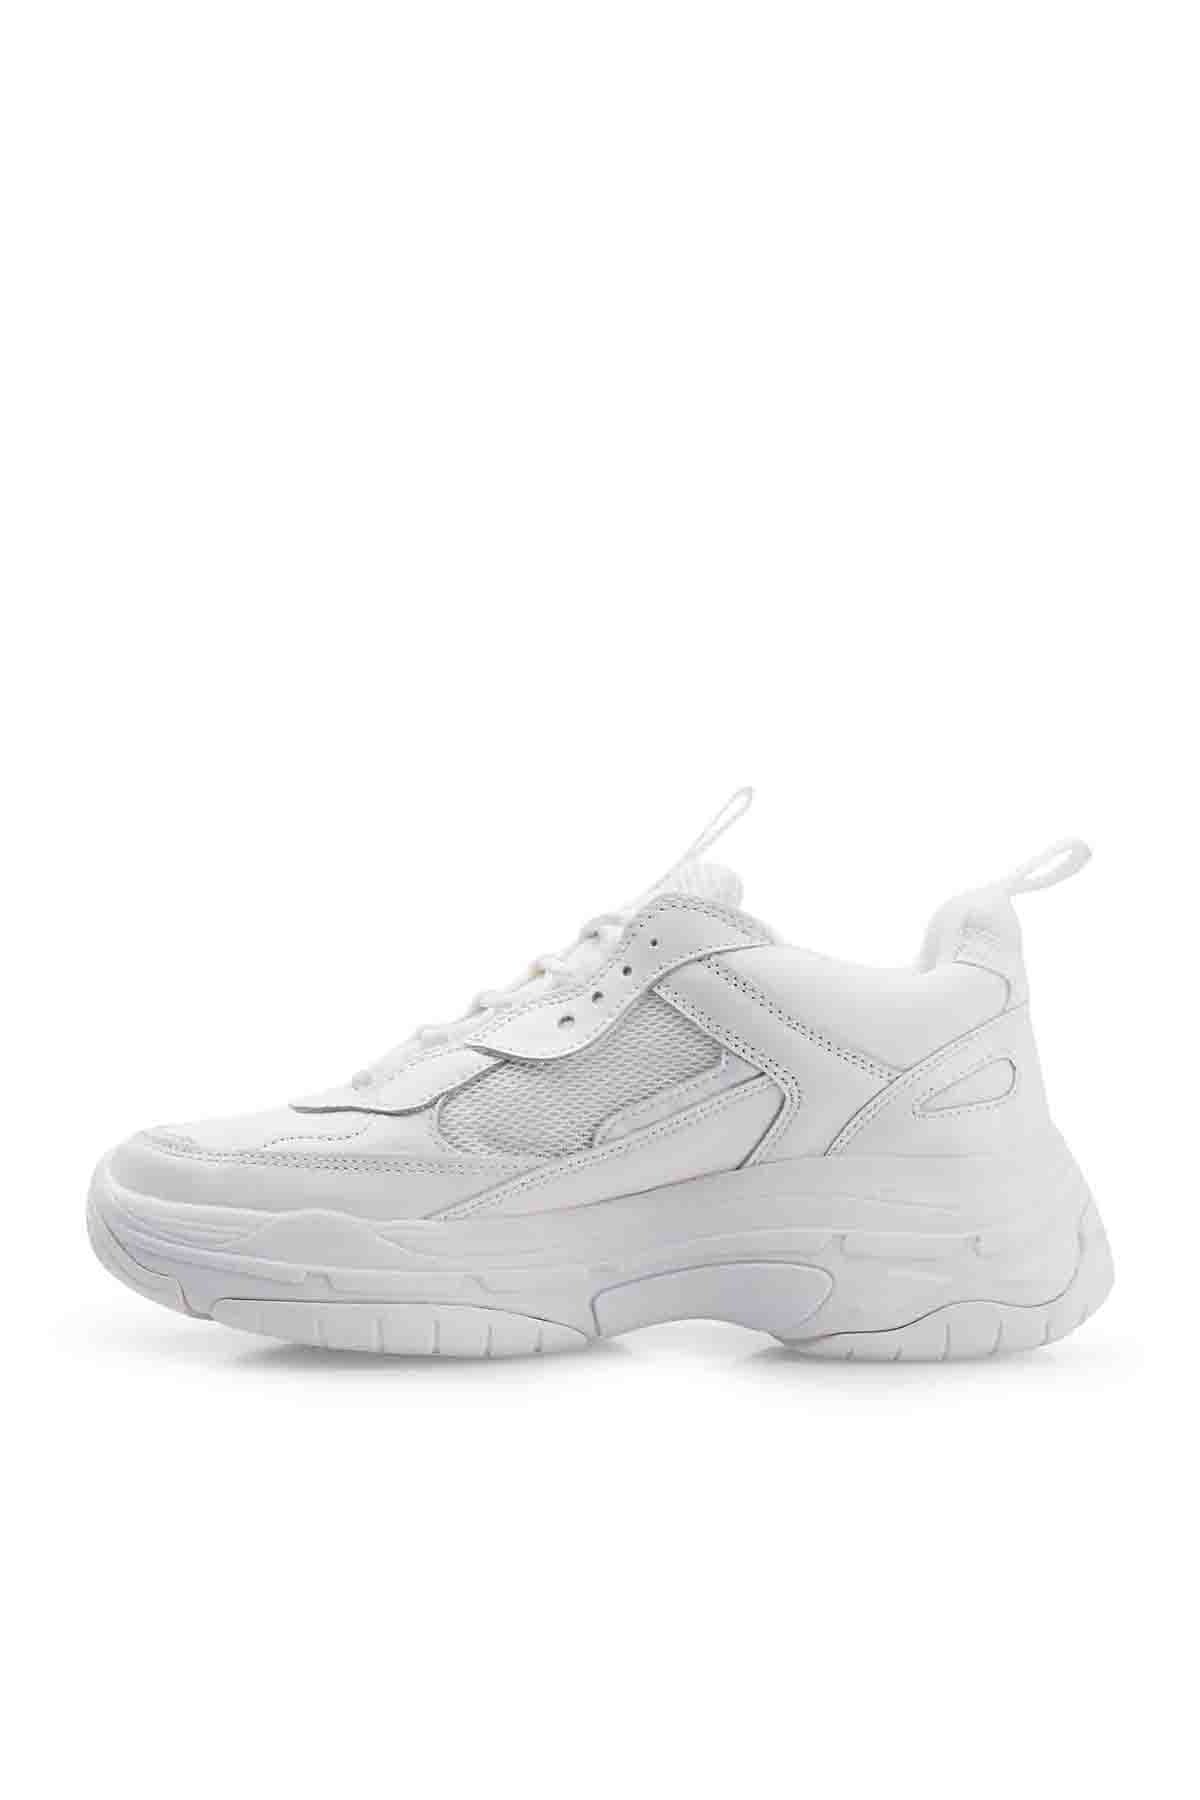 Calvin Klein Marka Logolu Kalın Taban Sneaker Erkek Ayakkabı 00000S0591 BIW BEYAZ